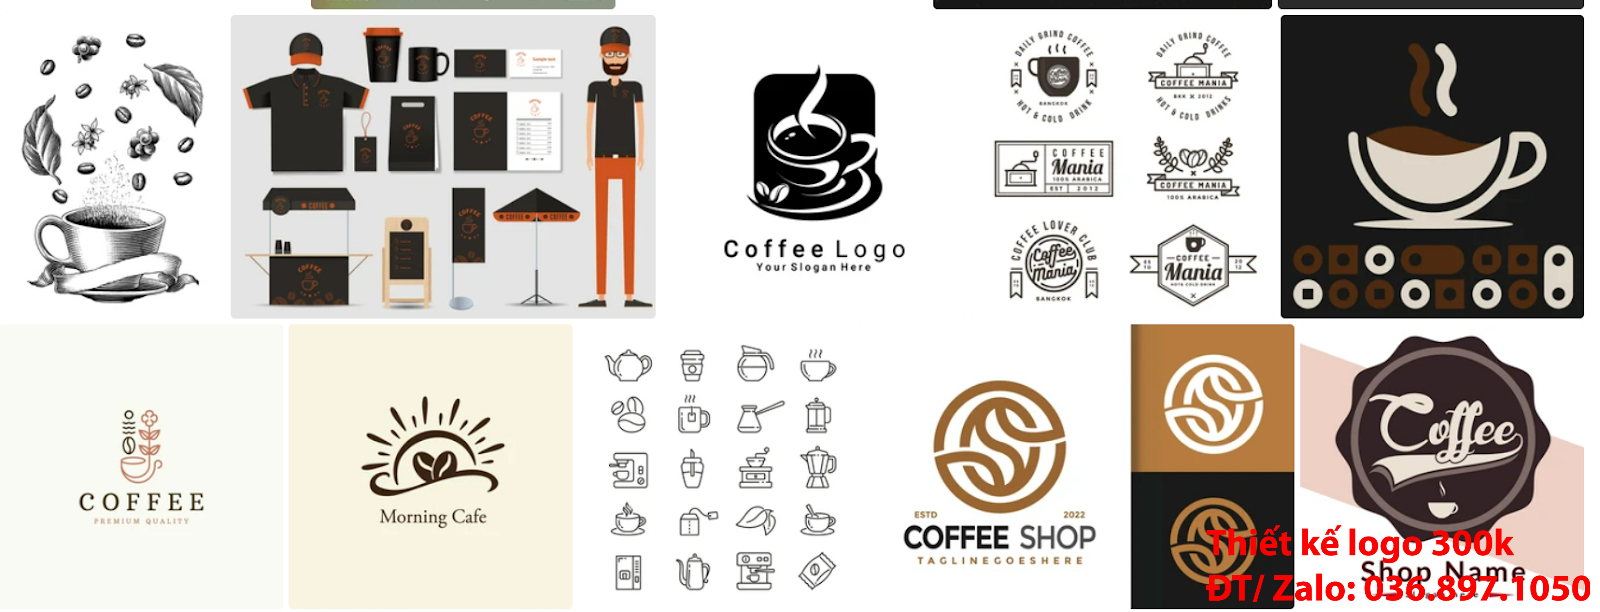 Đơn vị thiết kế mẫu logo đẹp cà phê cafe coffee sáng tạo uy tín chất lượng